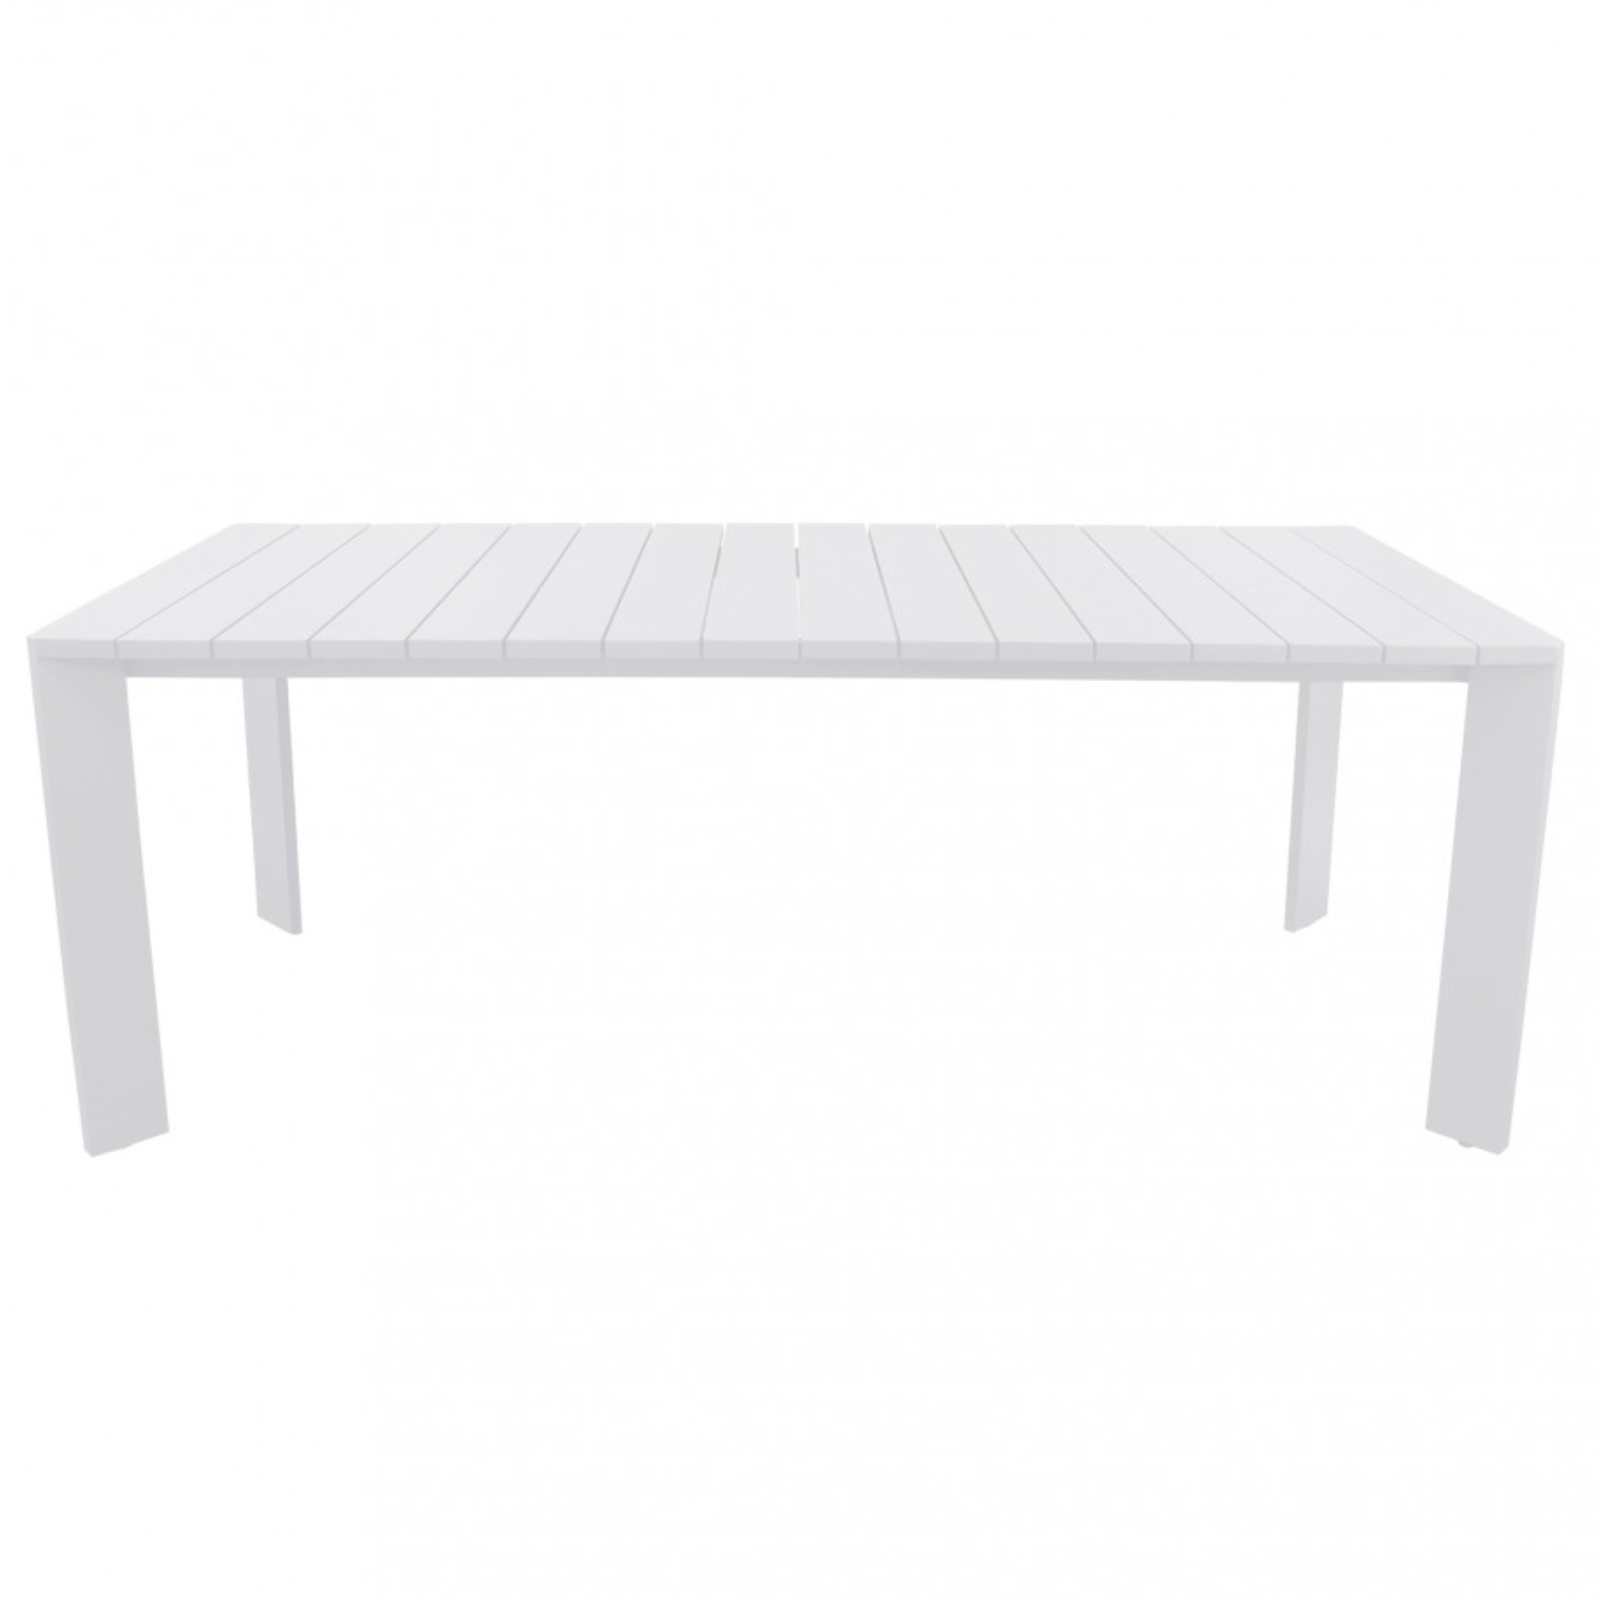 Tavolo rettangolare 200x100 in alluminio bianco da interno o esterno - Connec